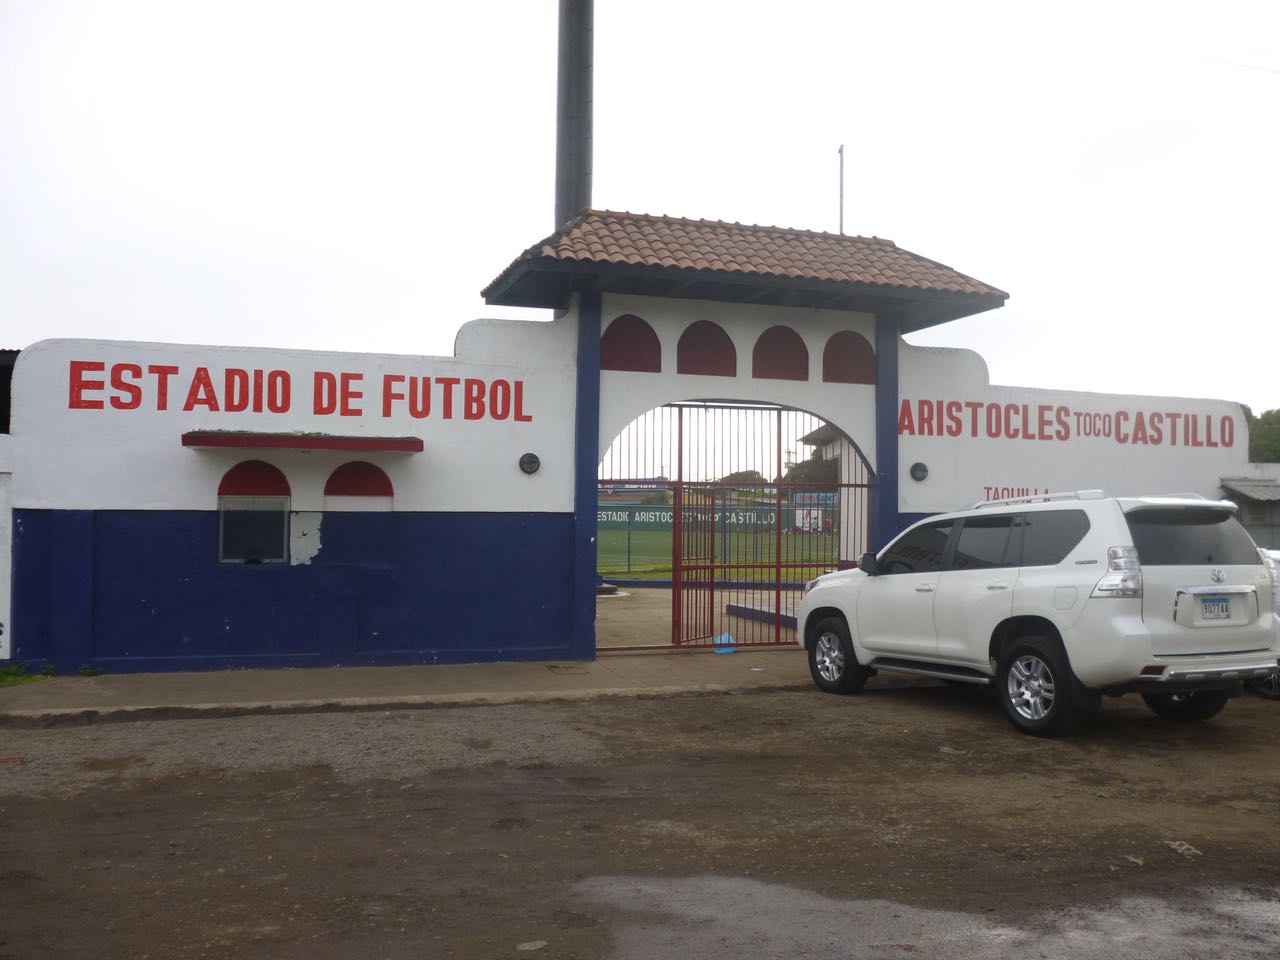 Propuestas, realidades, y más en infraestructuras deportivas para la provincia de Veraguas